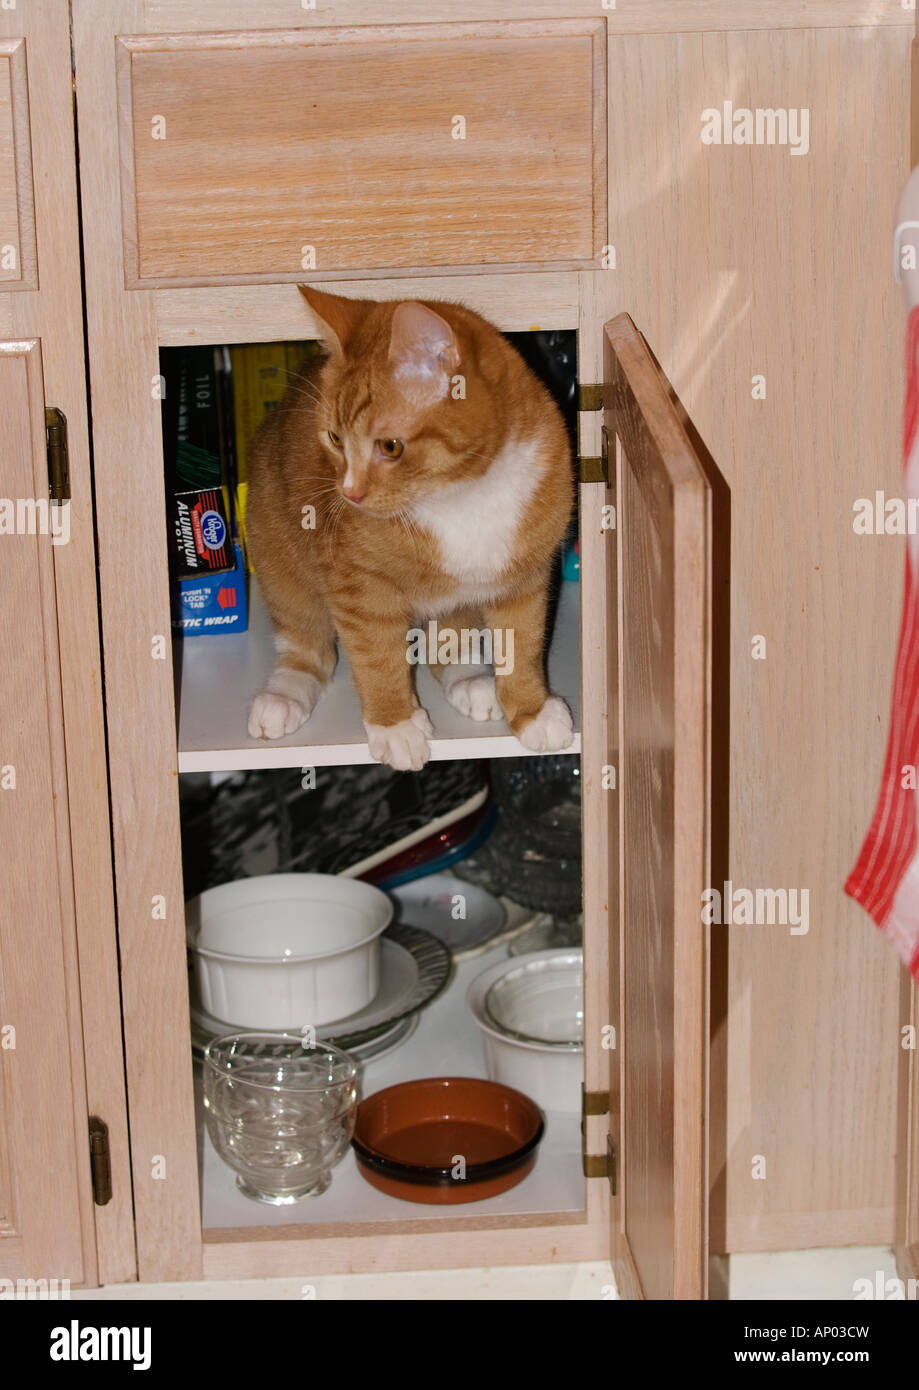 orange tabby kitten in cupboard looking out from open door Stock Photo